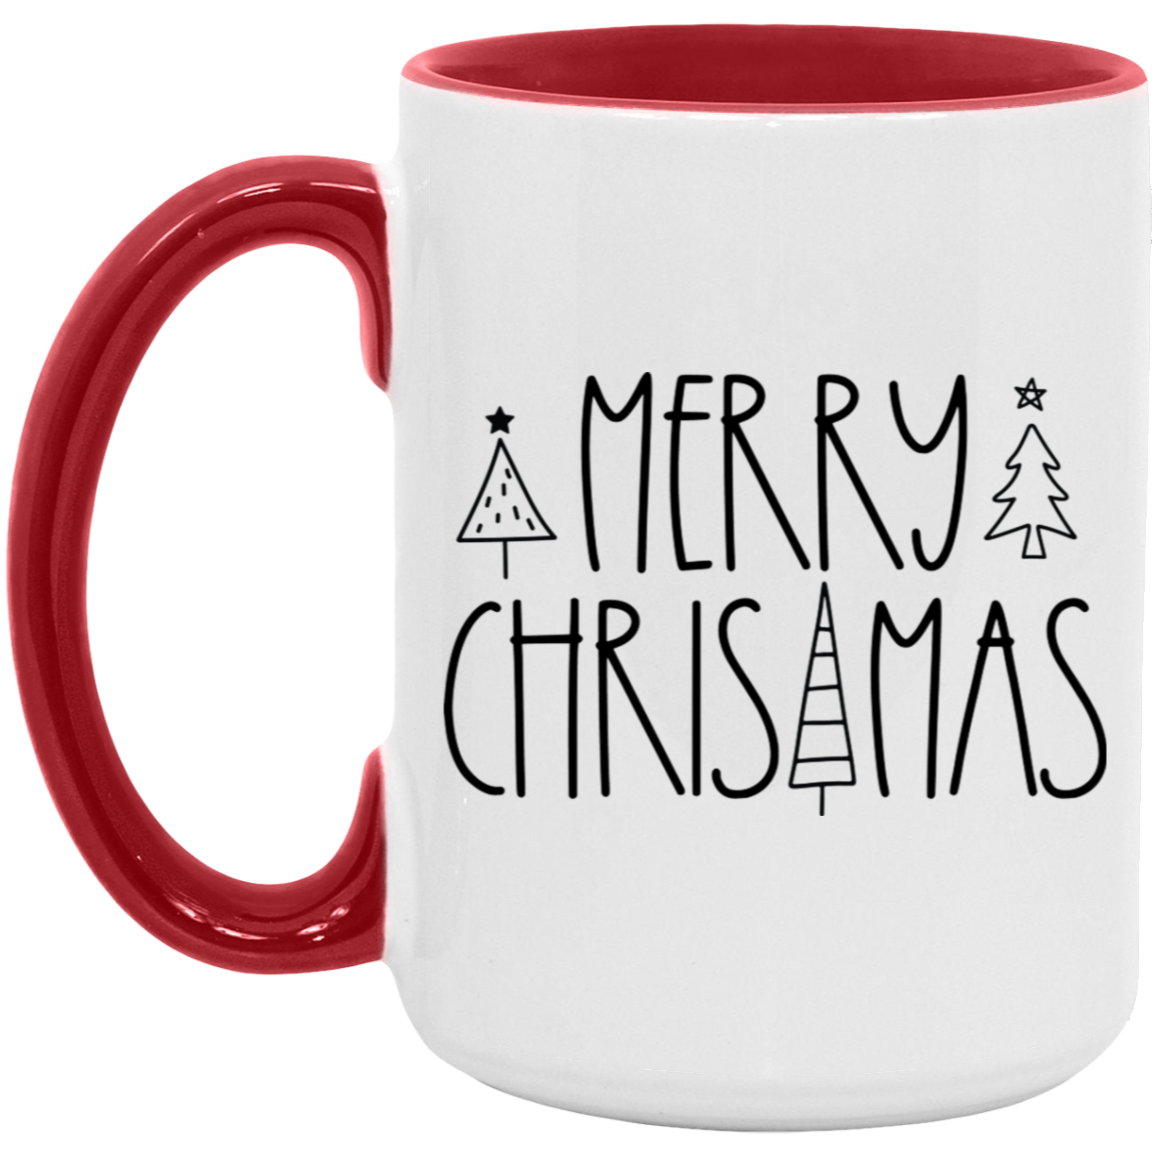 Merry Christmas Basic 15 oz Coffee Mug